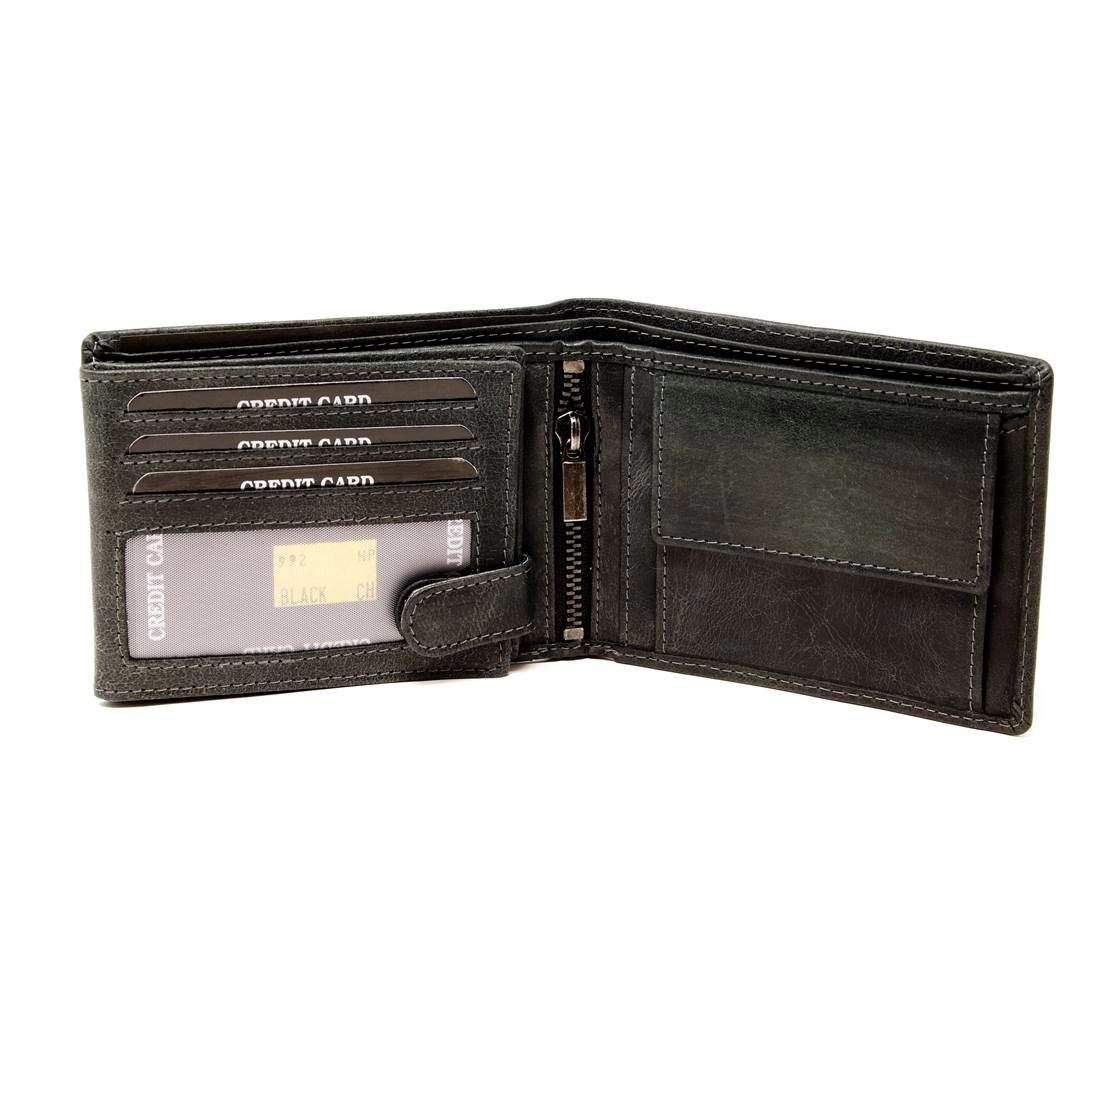 SHG Geldbörse Leder Münzfach Börse Portemonnaie, mit Schutz Herren Büffelleder Brieftasche Lederbörse Männerbörse RFID